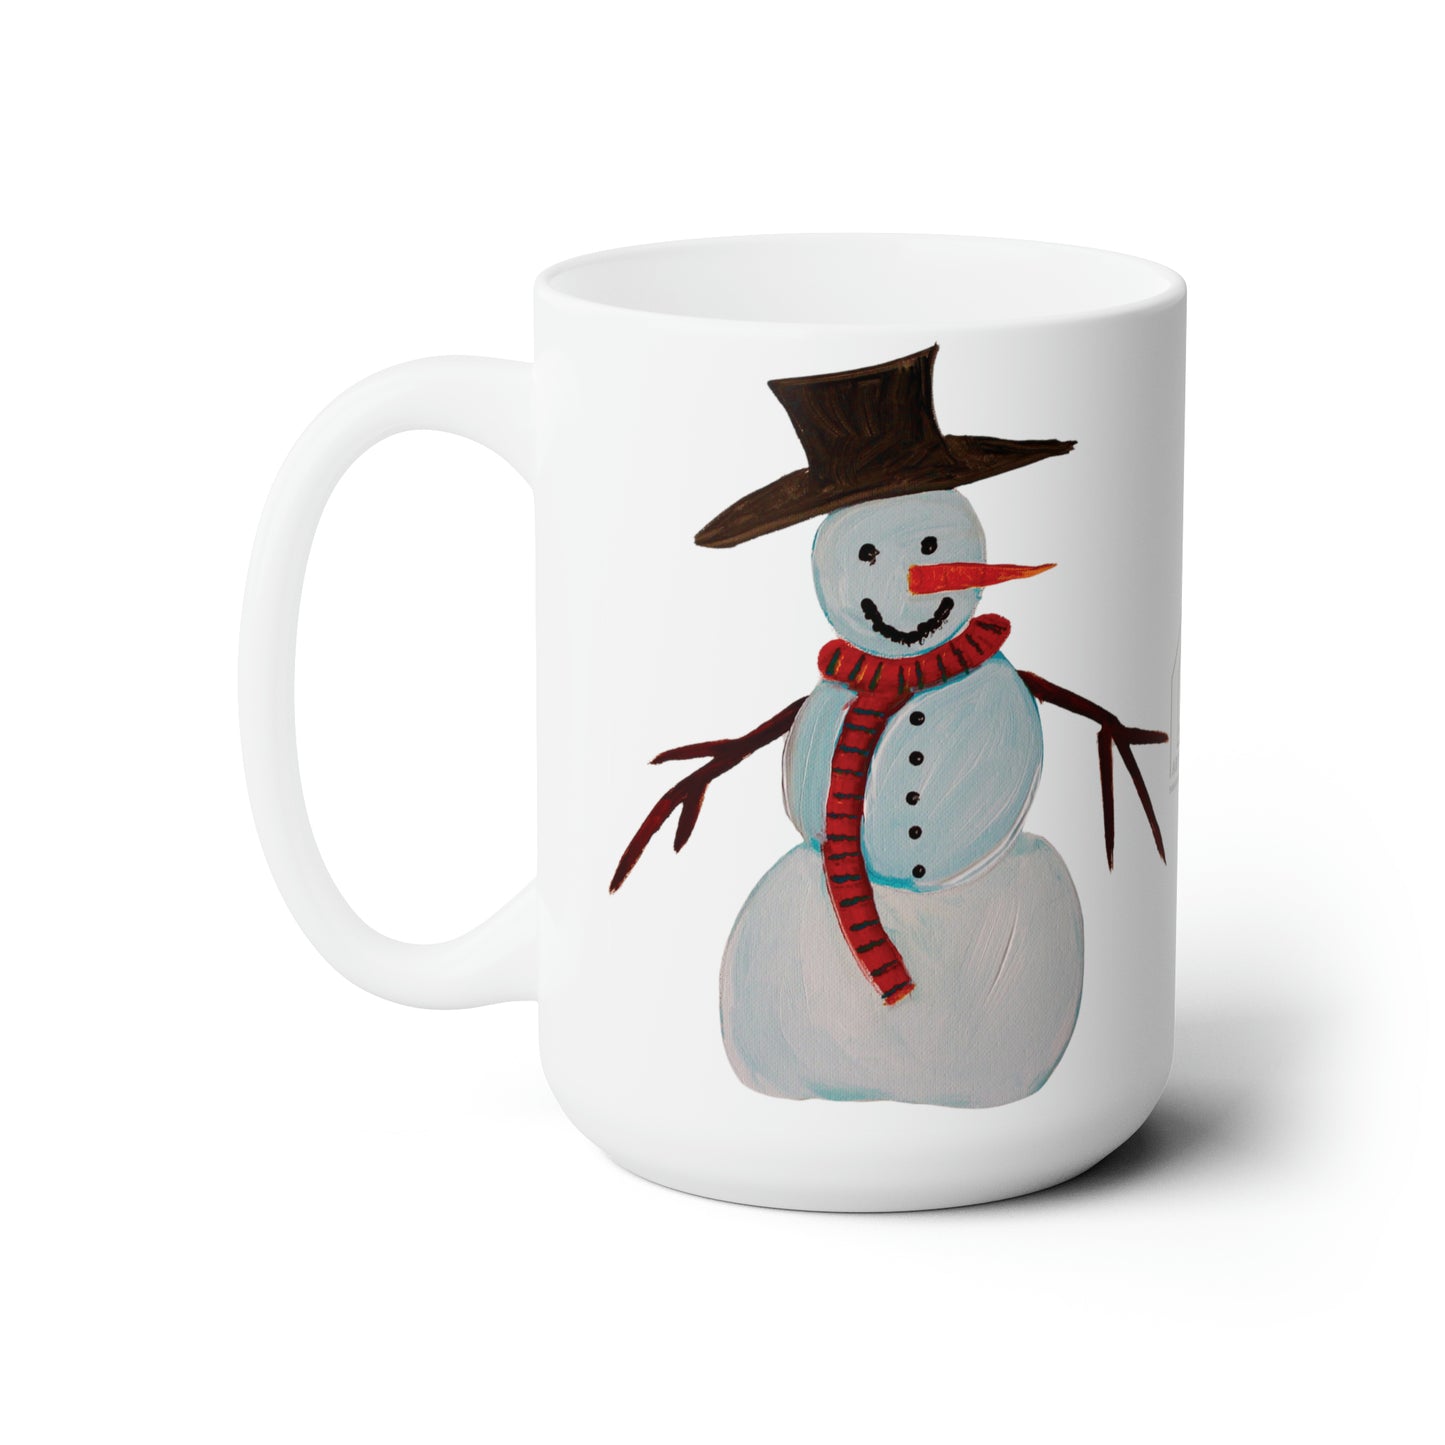 Holiday Coffee Mug - Ceramic Mug 15oz - Snowman mug - Christmas mug